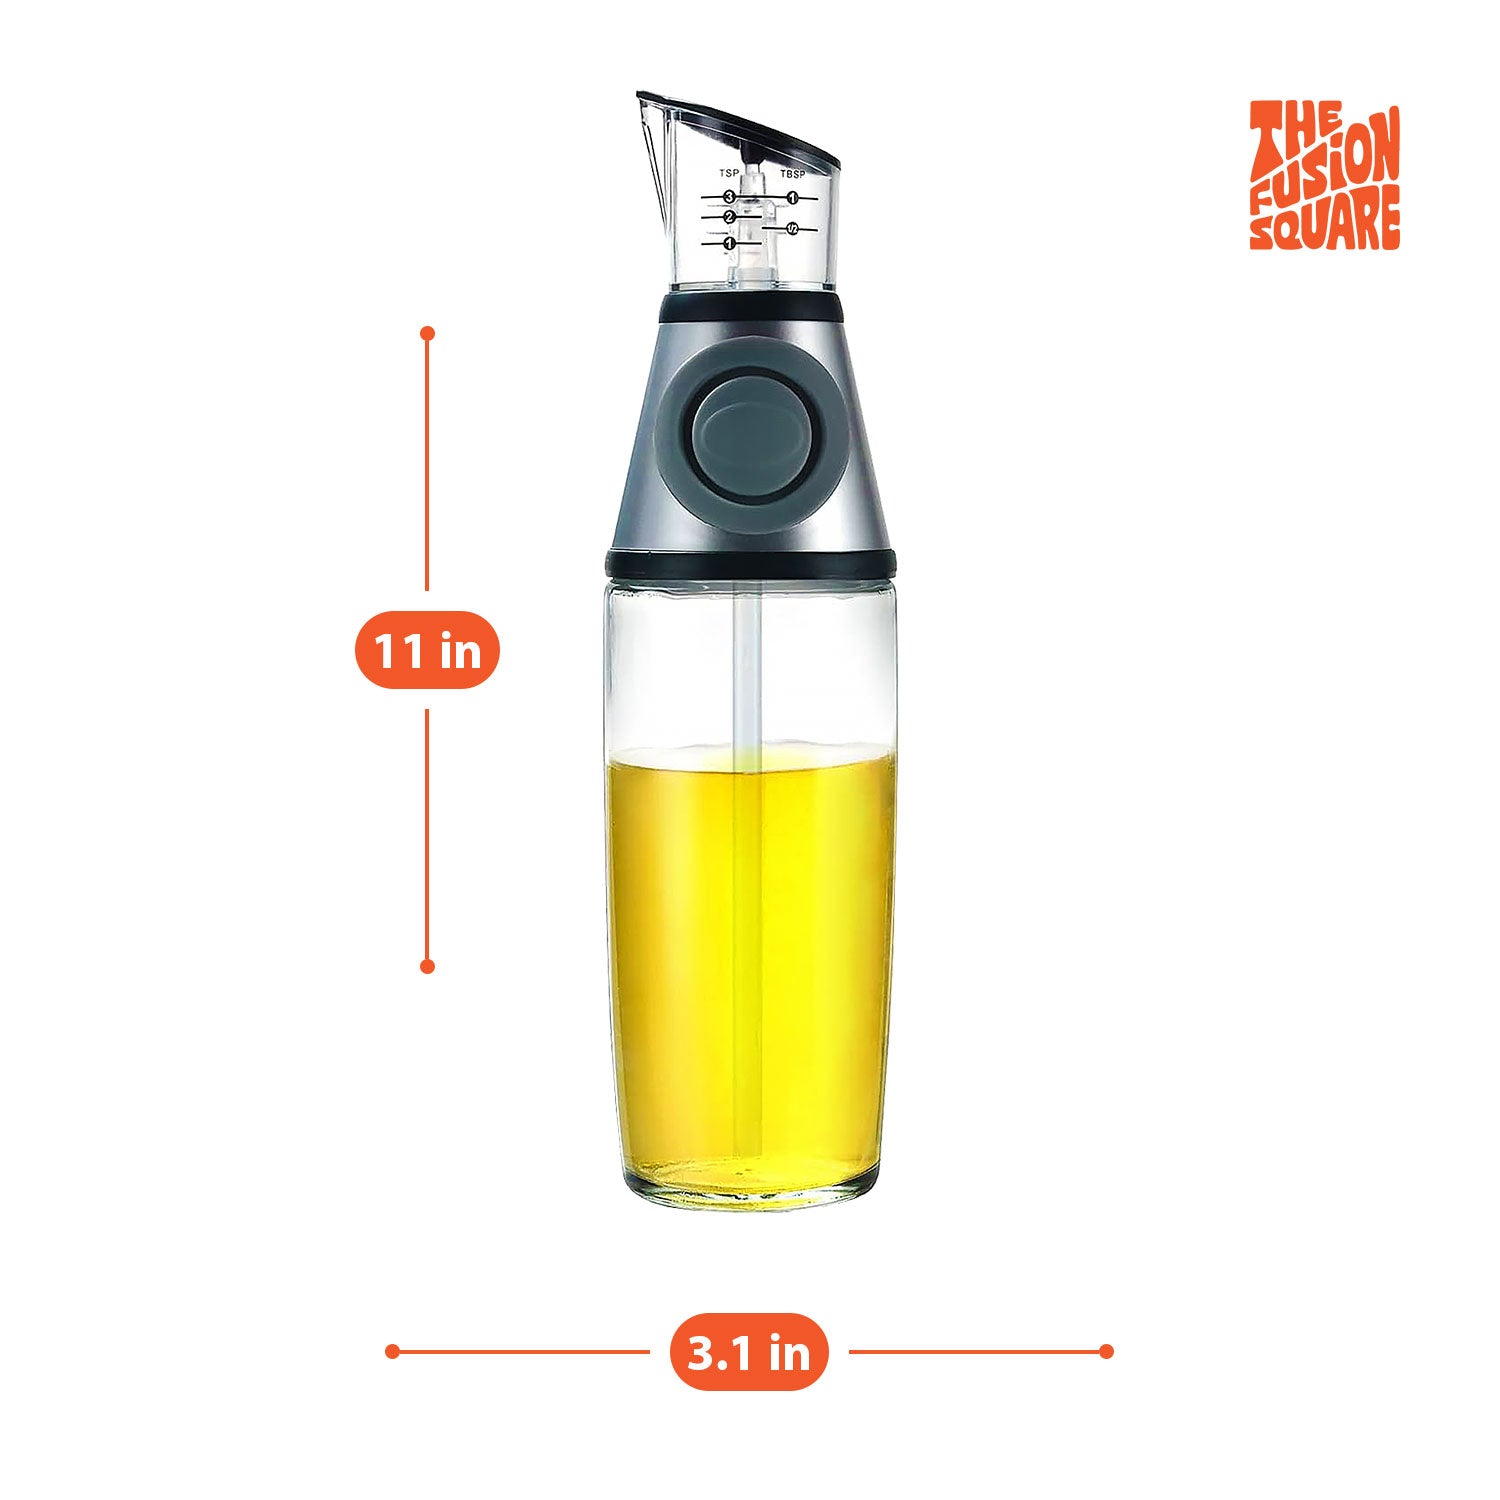 The Fusion Square Oil Dispenser Bottle with Precision Measurement